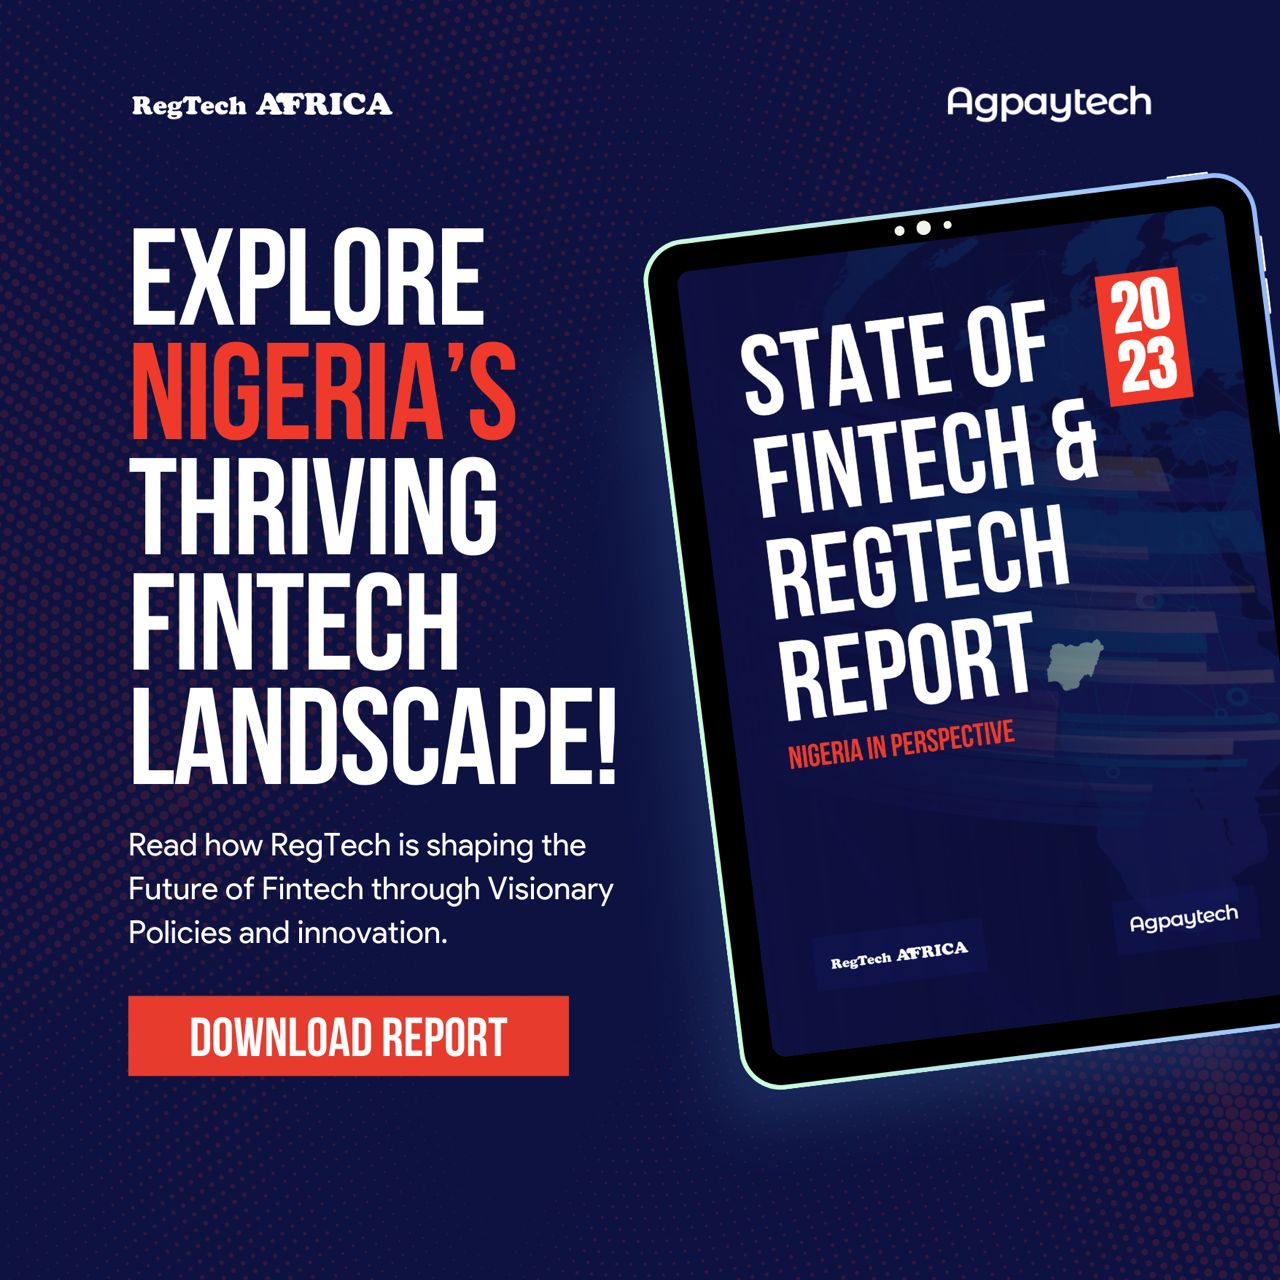 State of Fintech & Regtech Reports